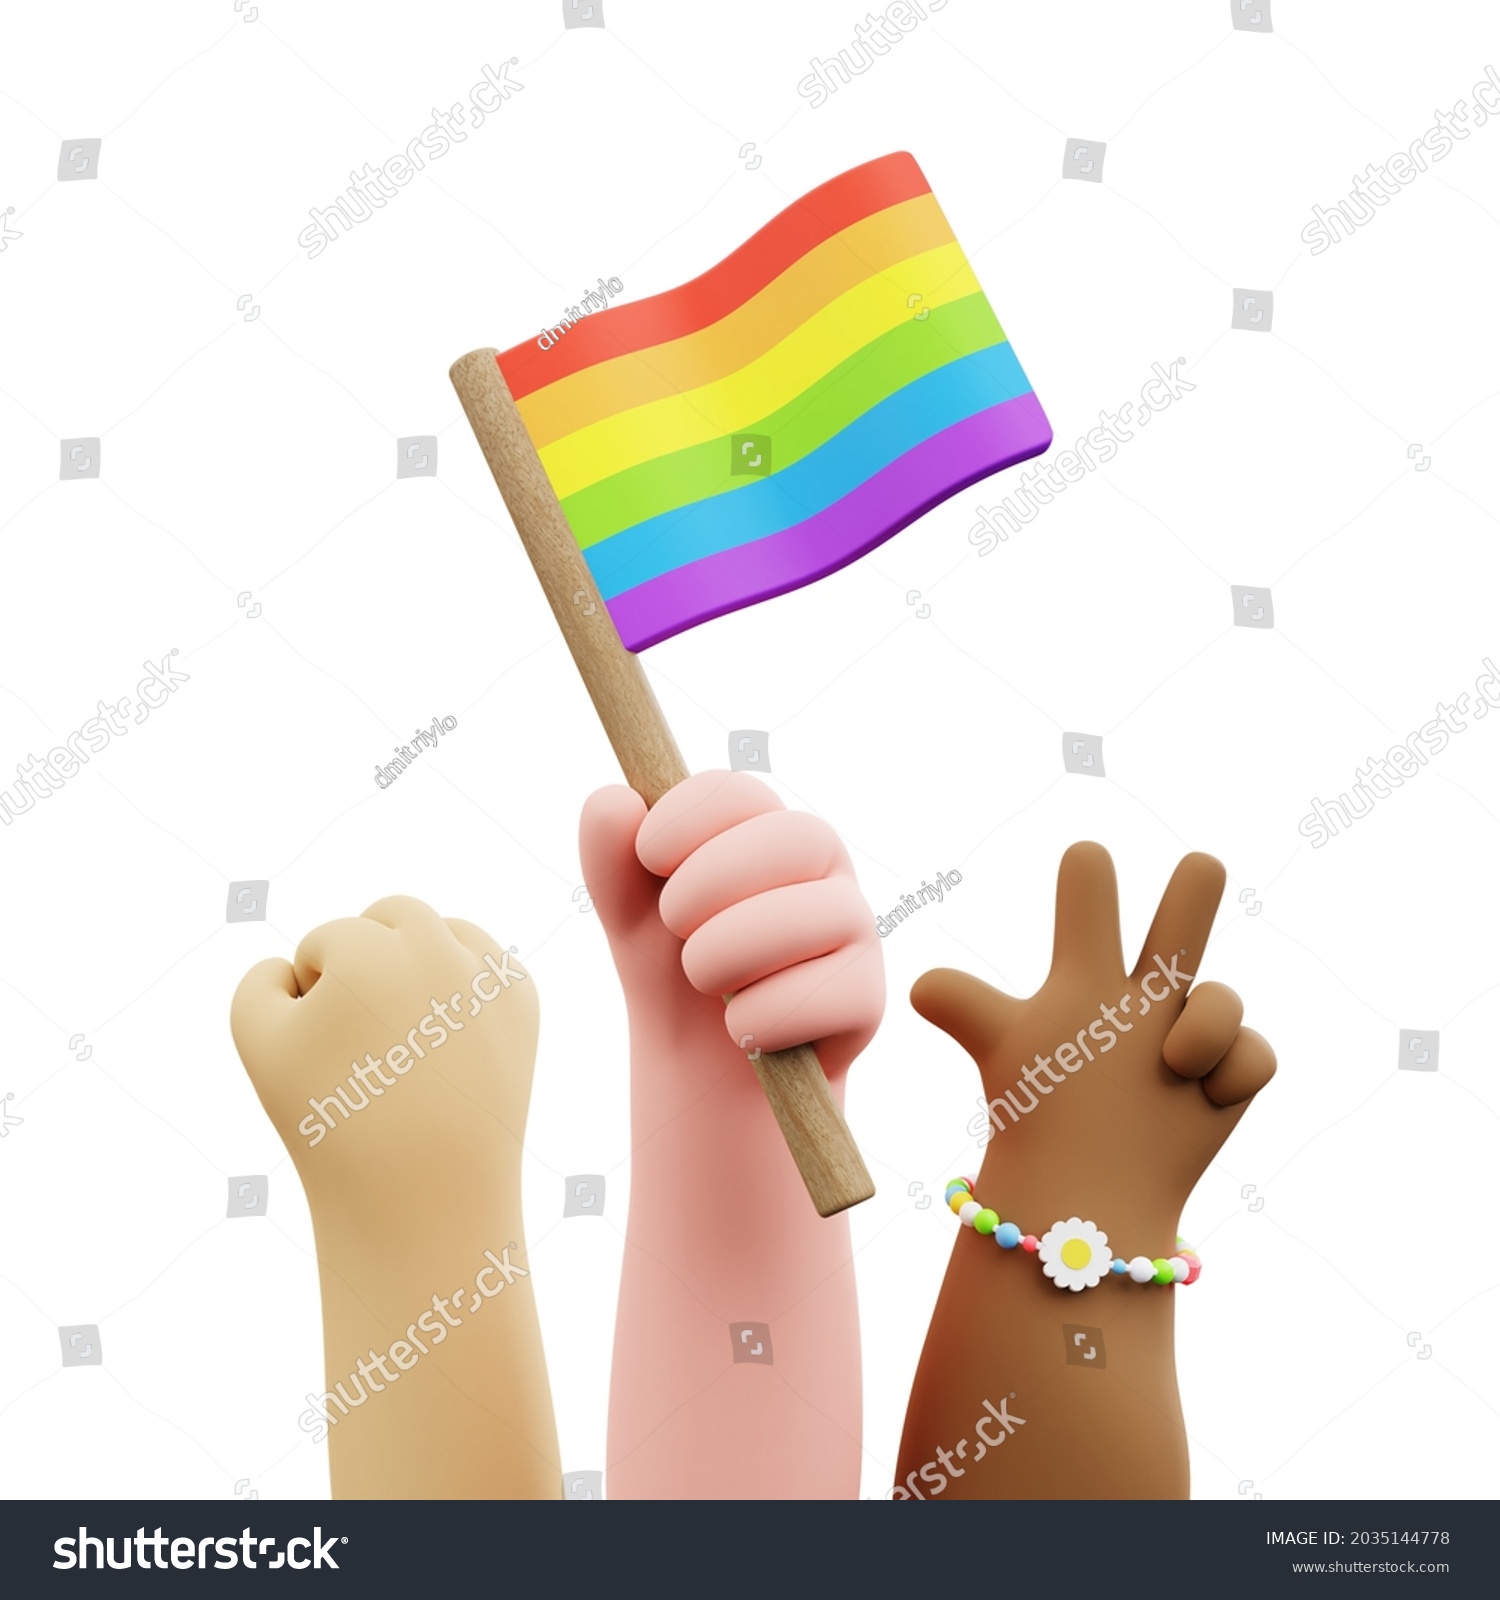 Lgbt Pride Parade Poster Cartoon Hands Stock Illustration 2035144778 Shutterstock 2305